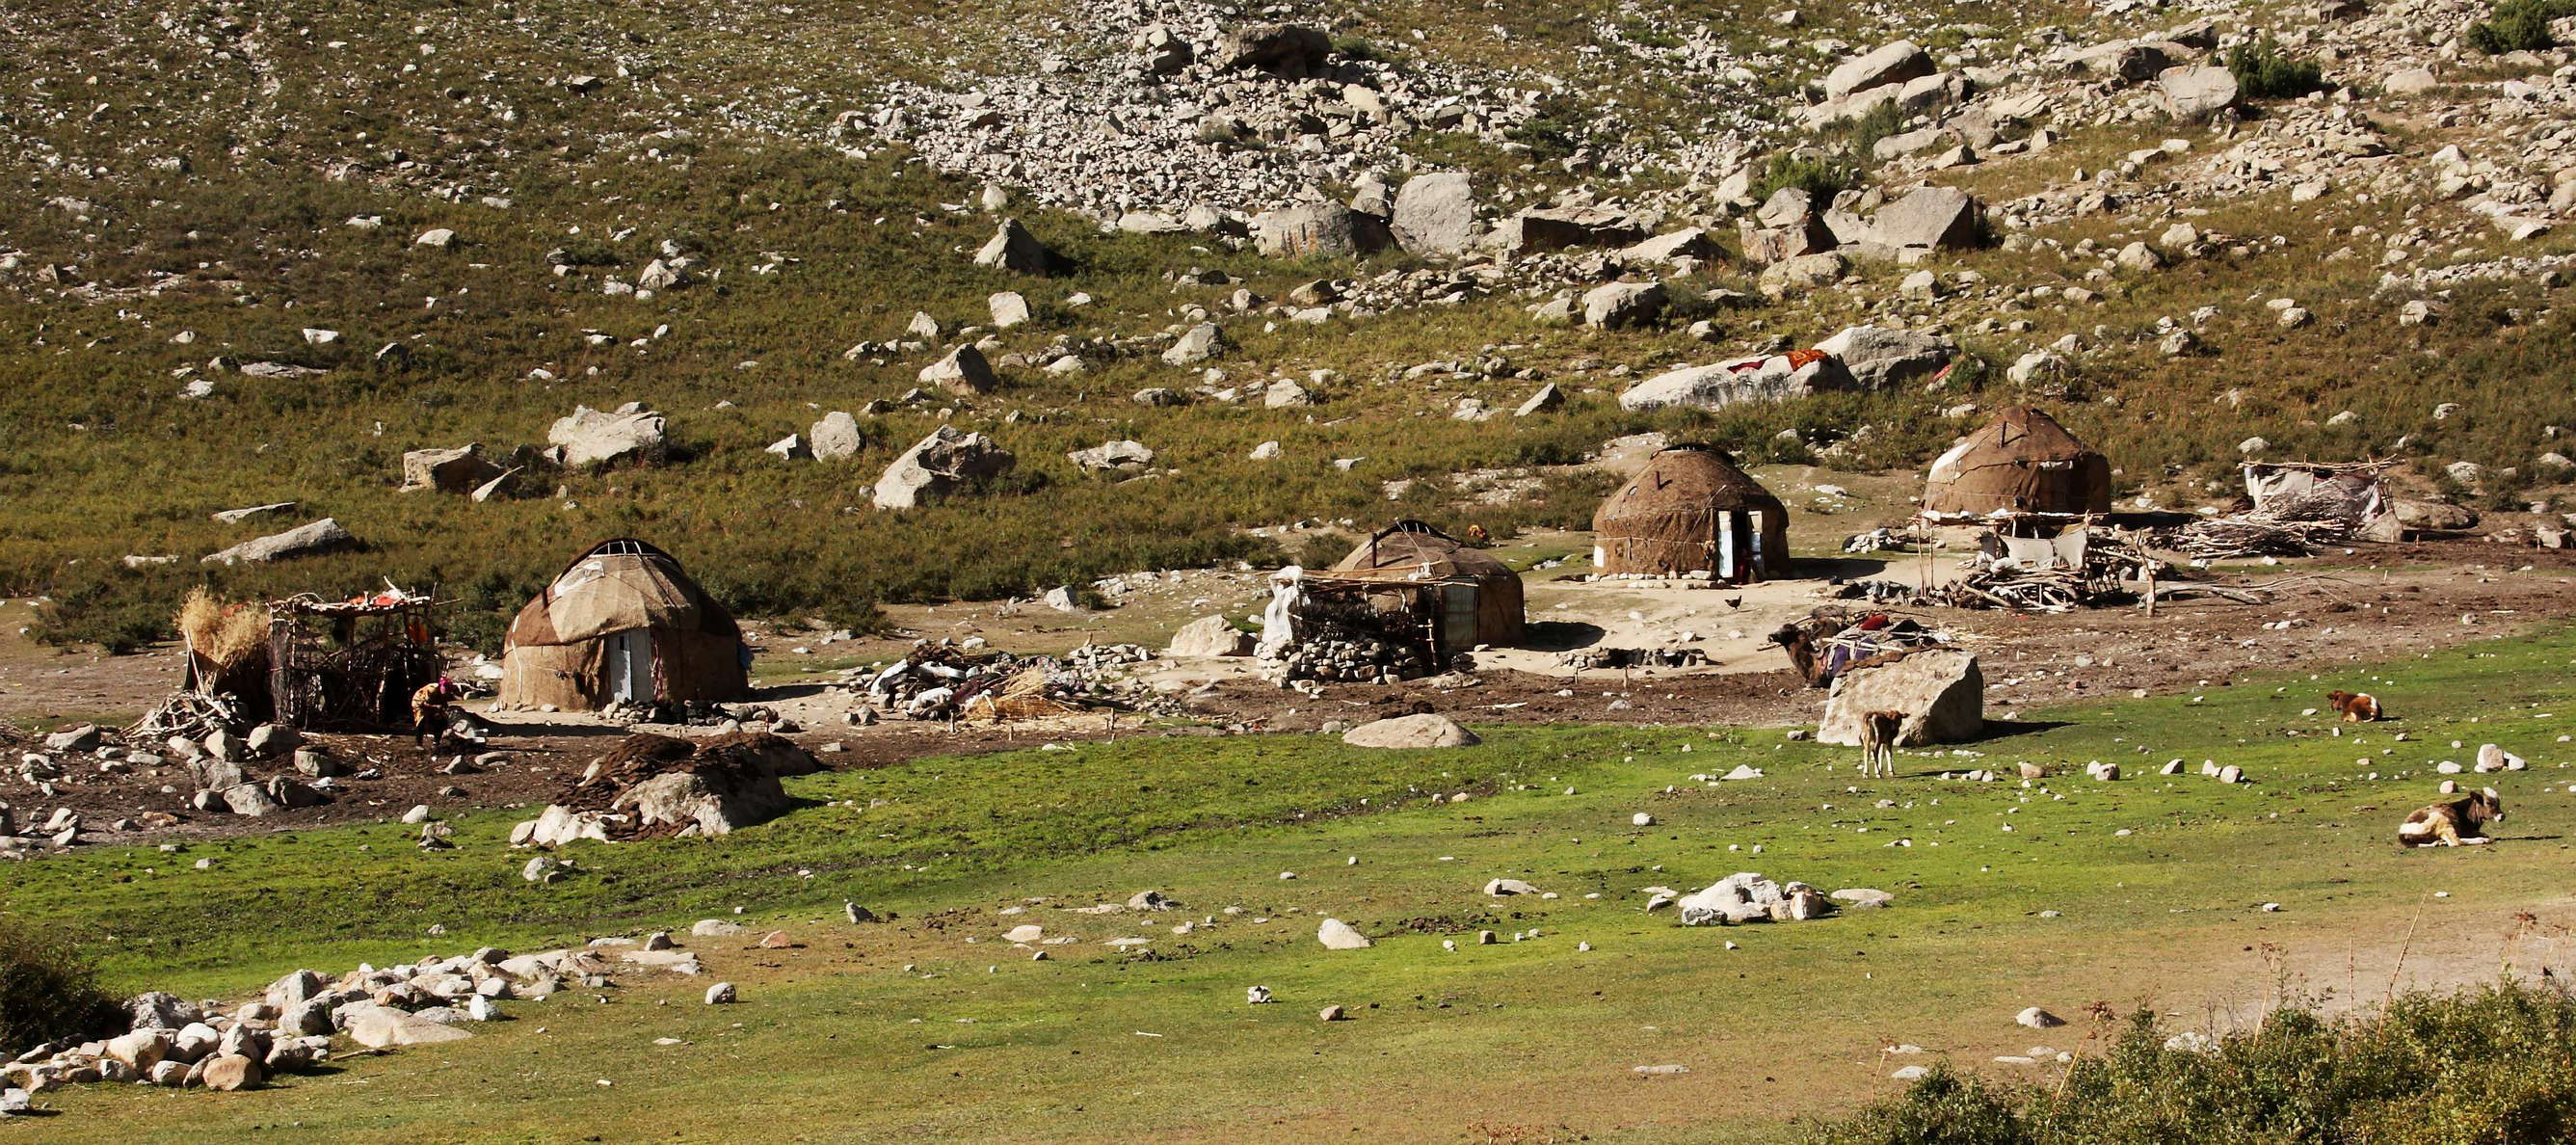 Pitowkul Valley  |  Kyrgyz camp